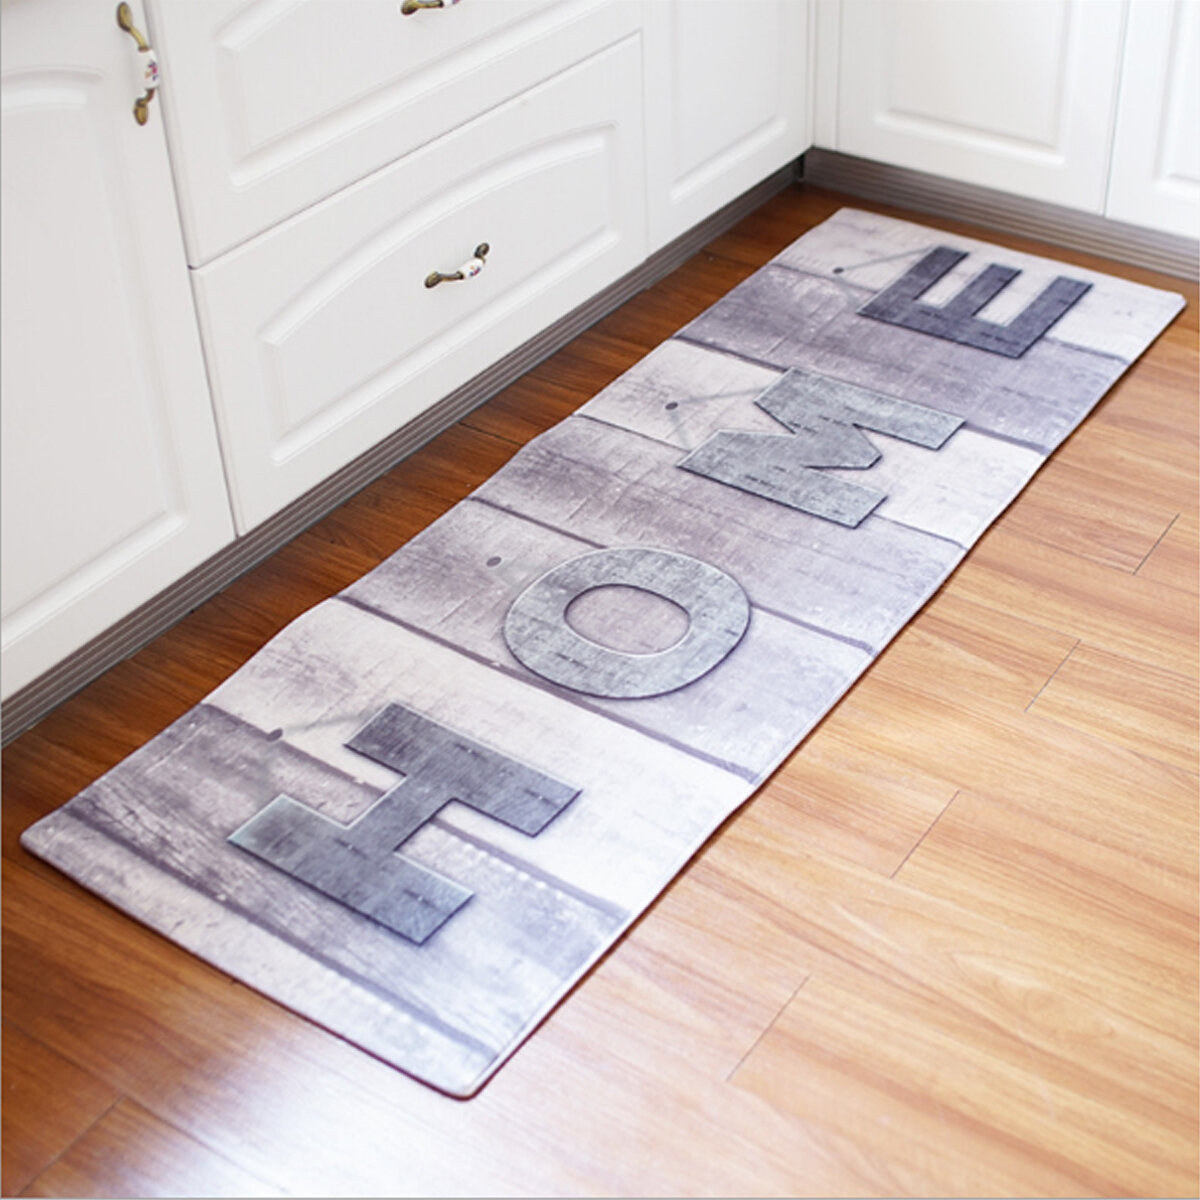 180cm Non-Slip Kitchen Bathroom Floor Mat Pad Rug Carpet Doormat Home Indoor Cushion